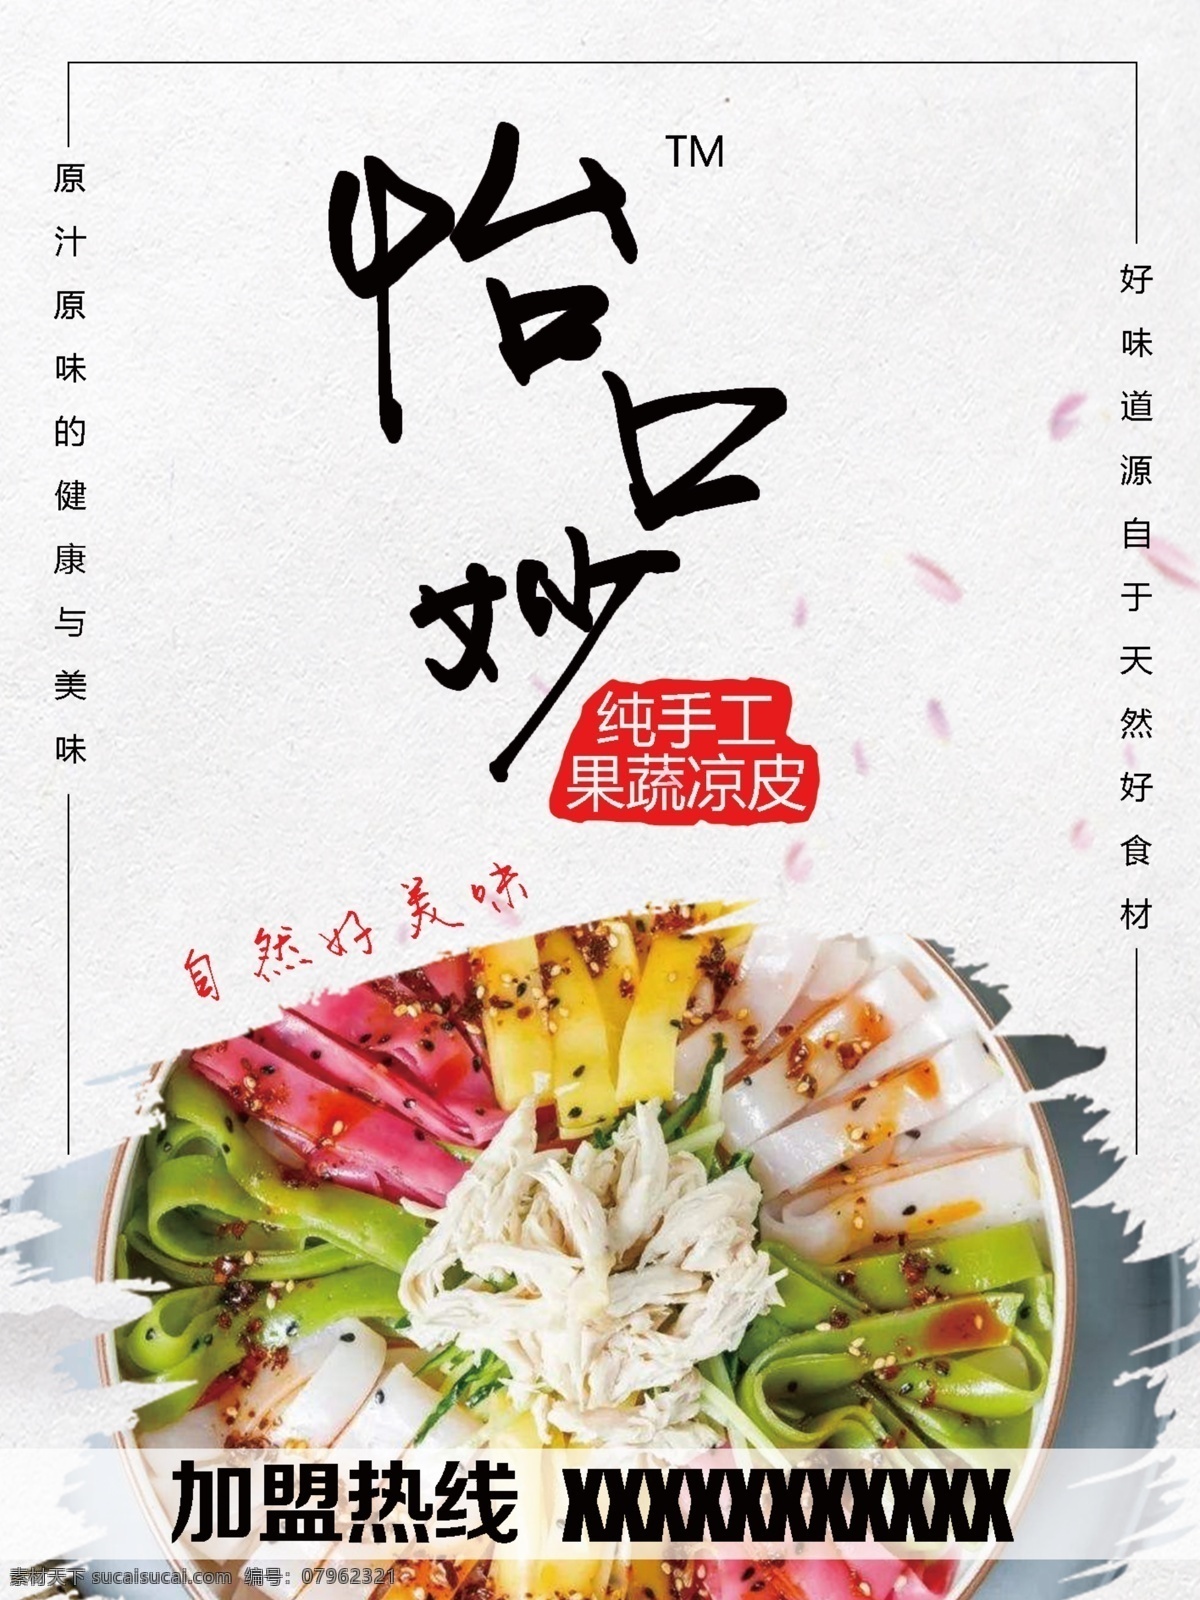 蔬菜凉皮 中国风 蔬菜 凉皮 水墨块 美食 快餐 字体 菜单菜谱